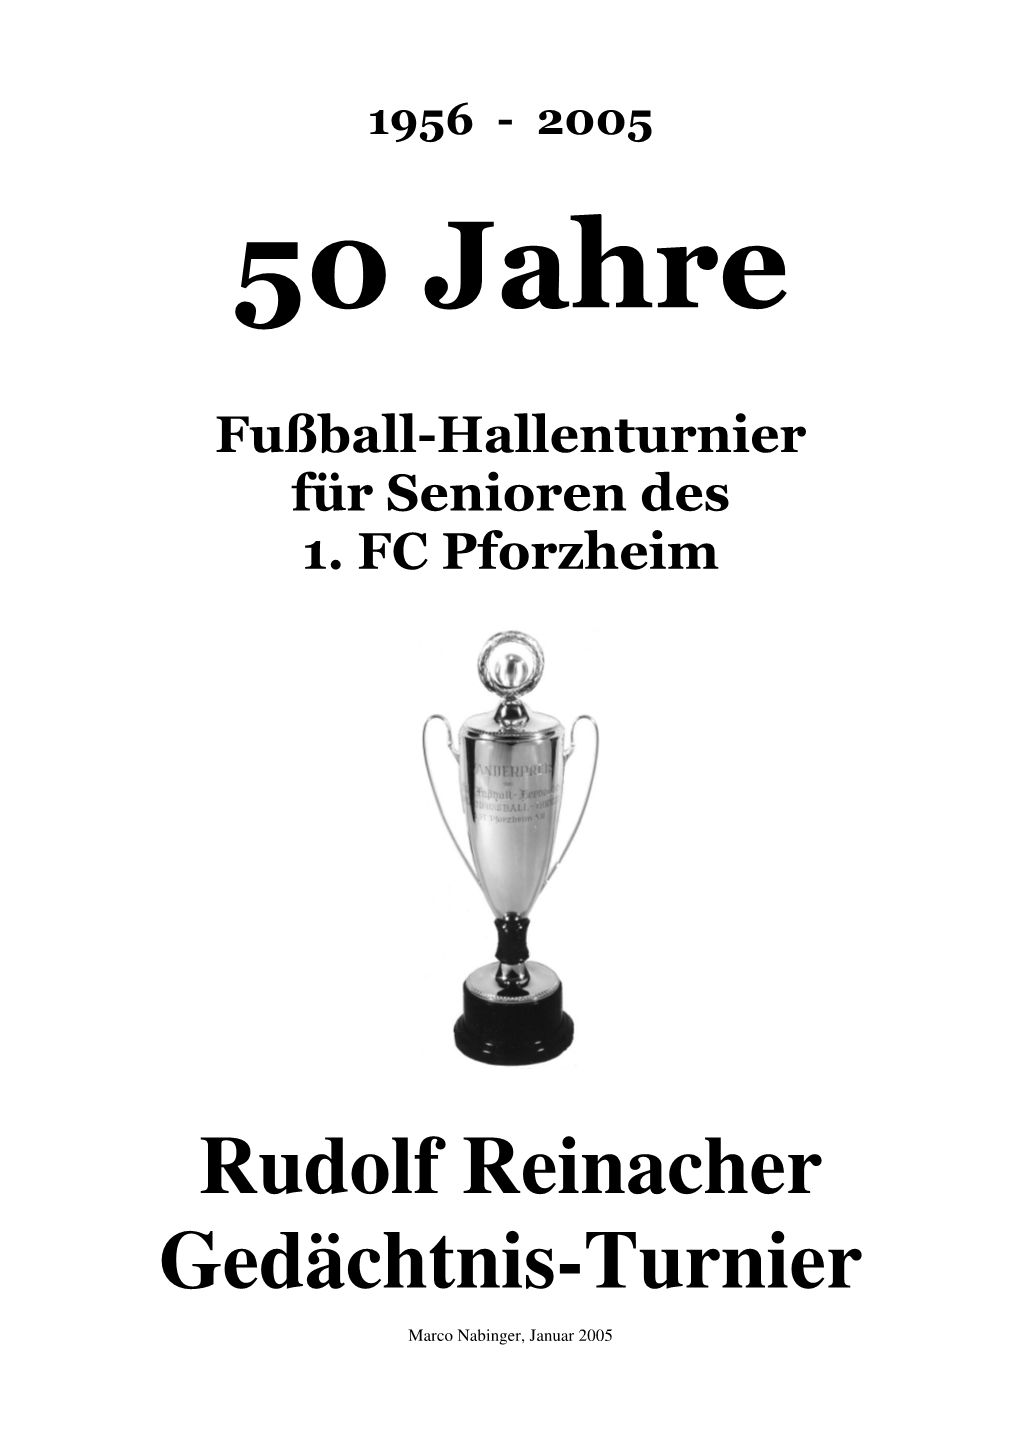 Rudolf Reinacher Gedächtnis-Turnier